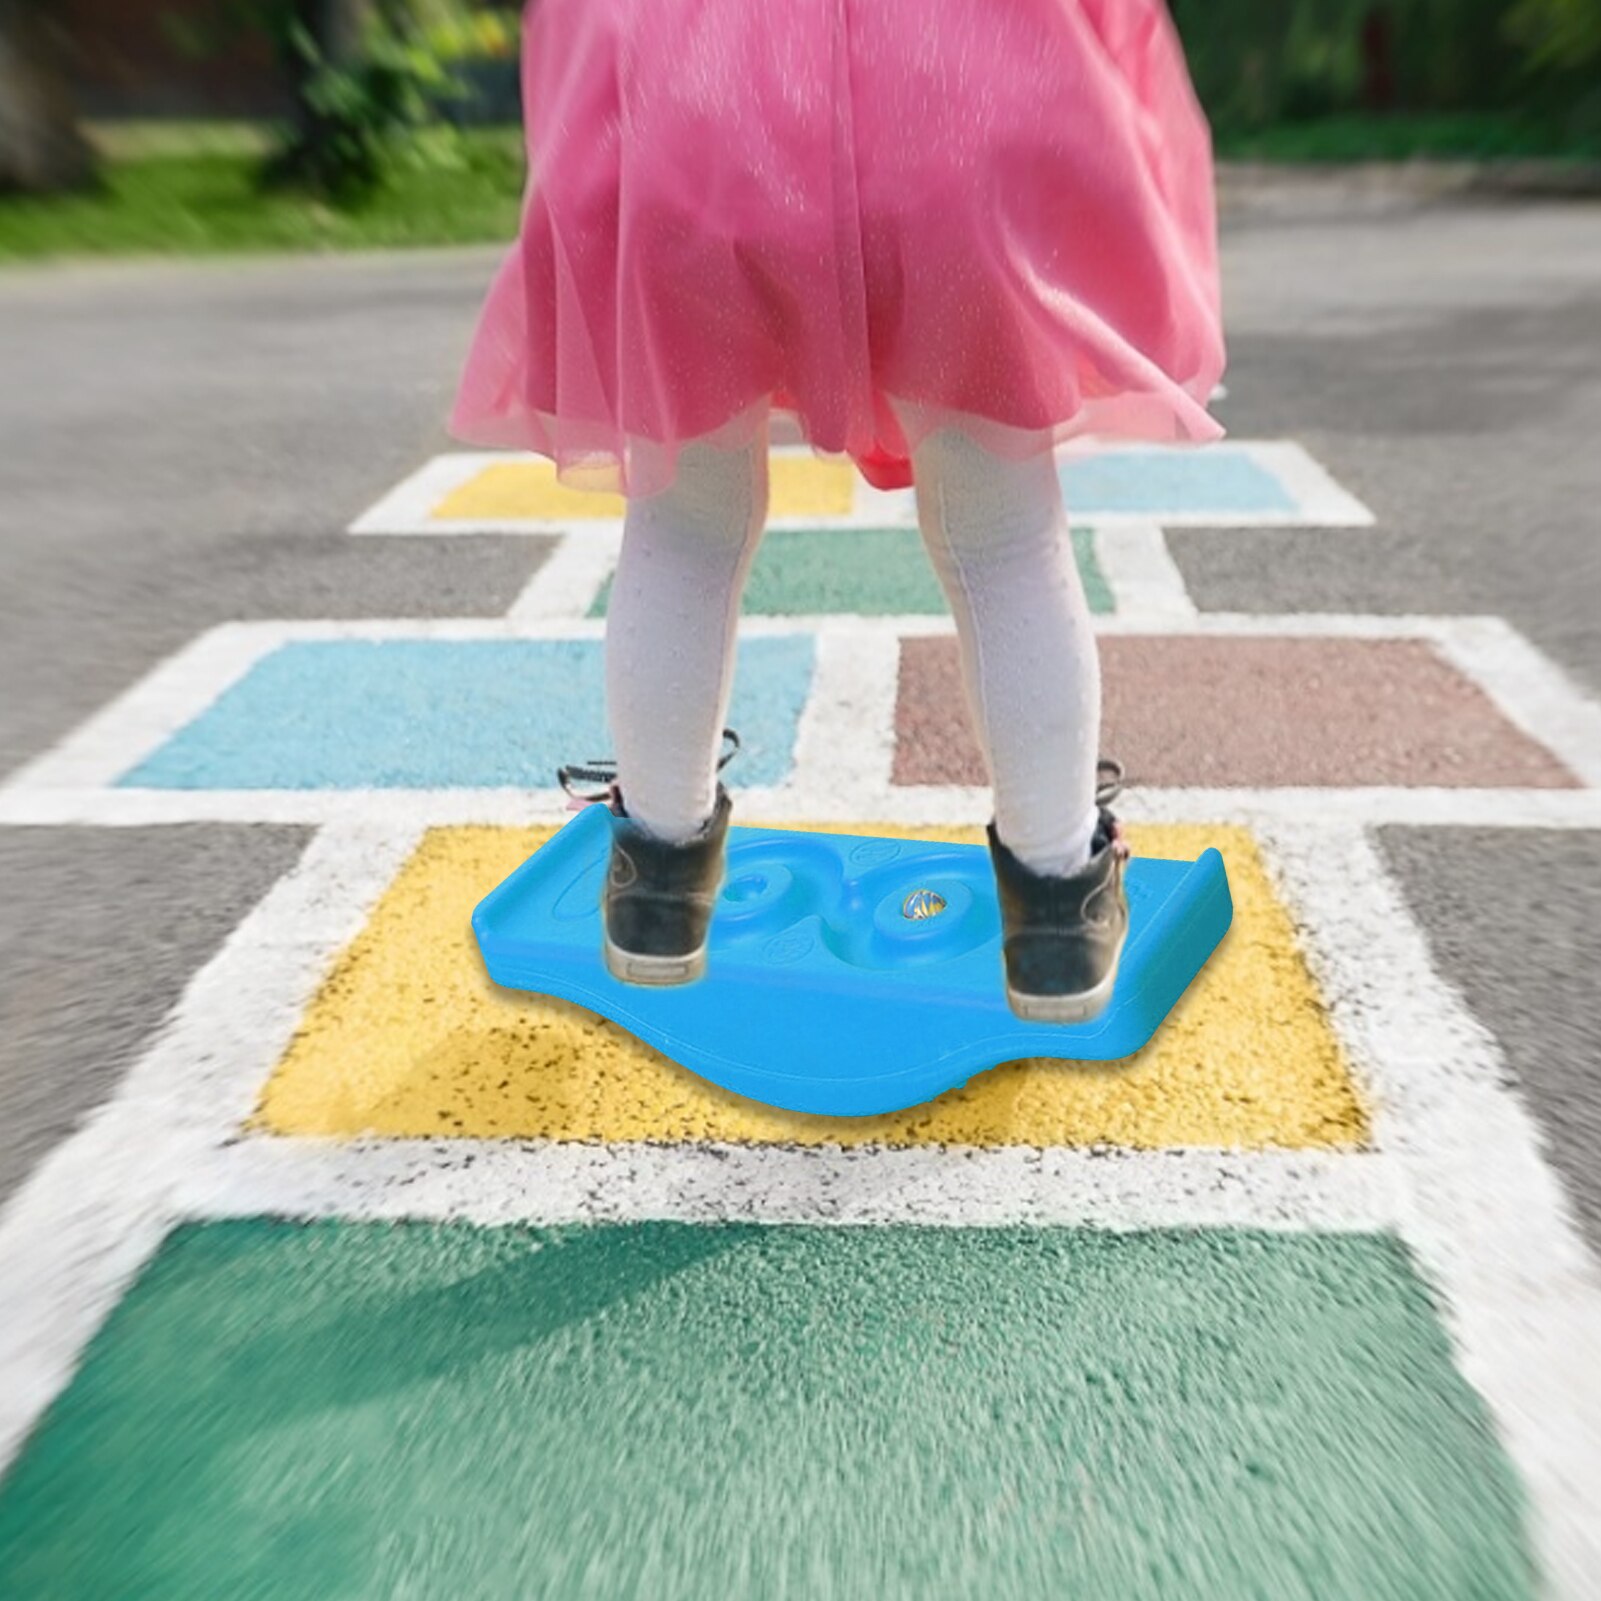 Meerdere Kleuren Pe Evenwichtige Wip Board Hoge Balans Oefening Toy Balance Zaad Dawn Board Voor Over 2 Jaar oude Kinderen